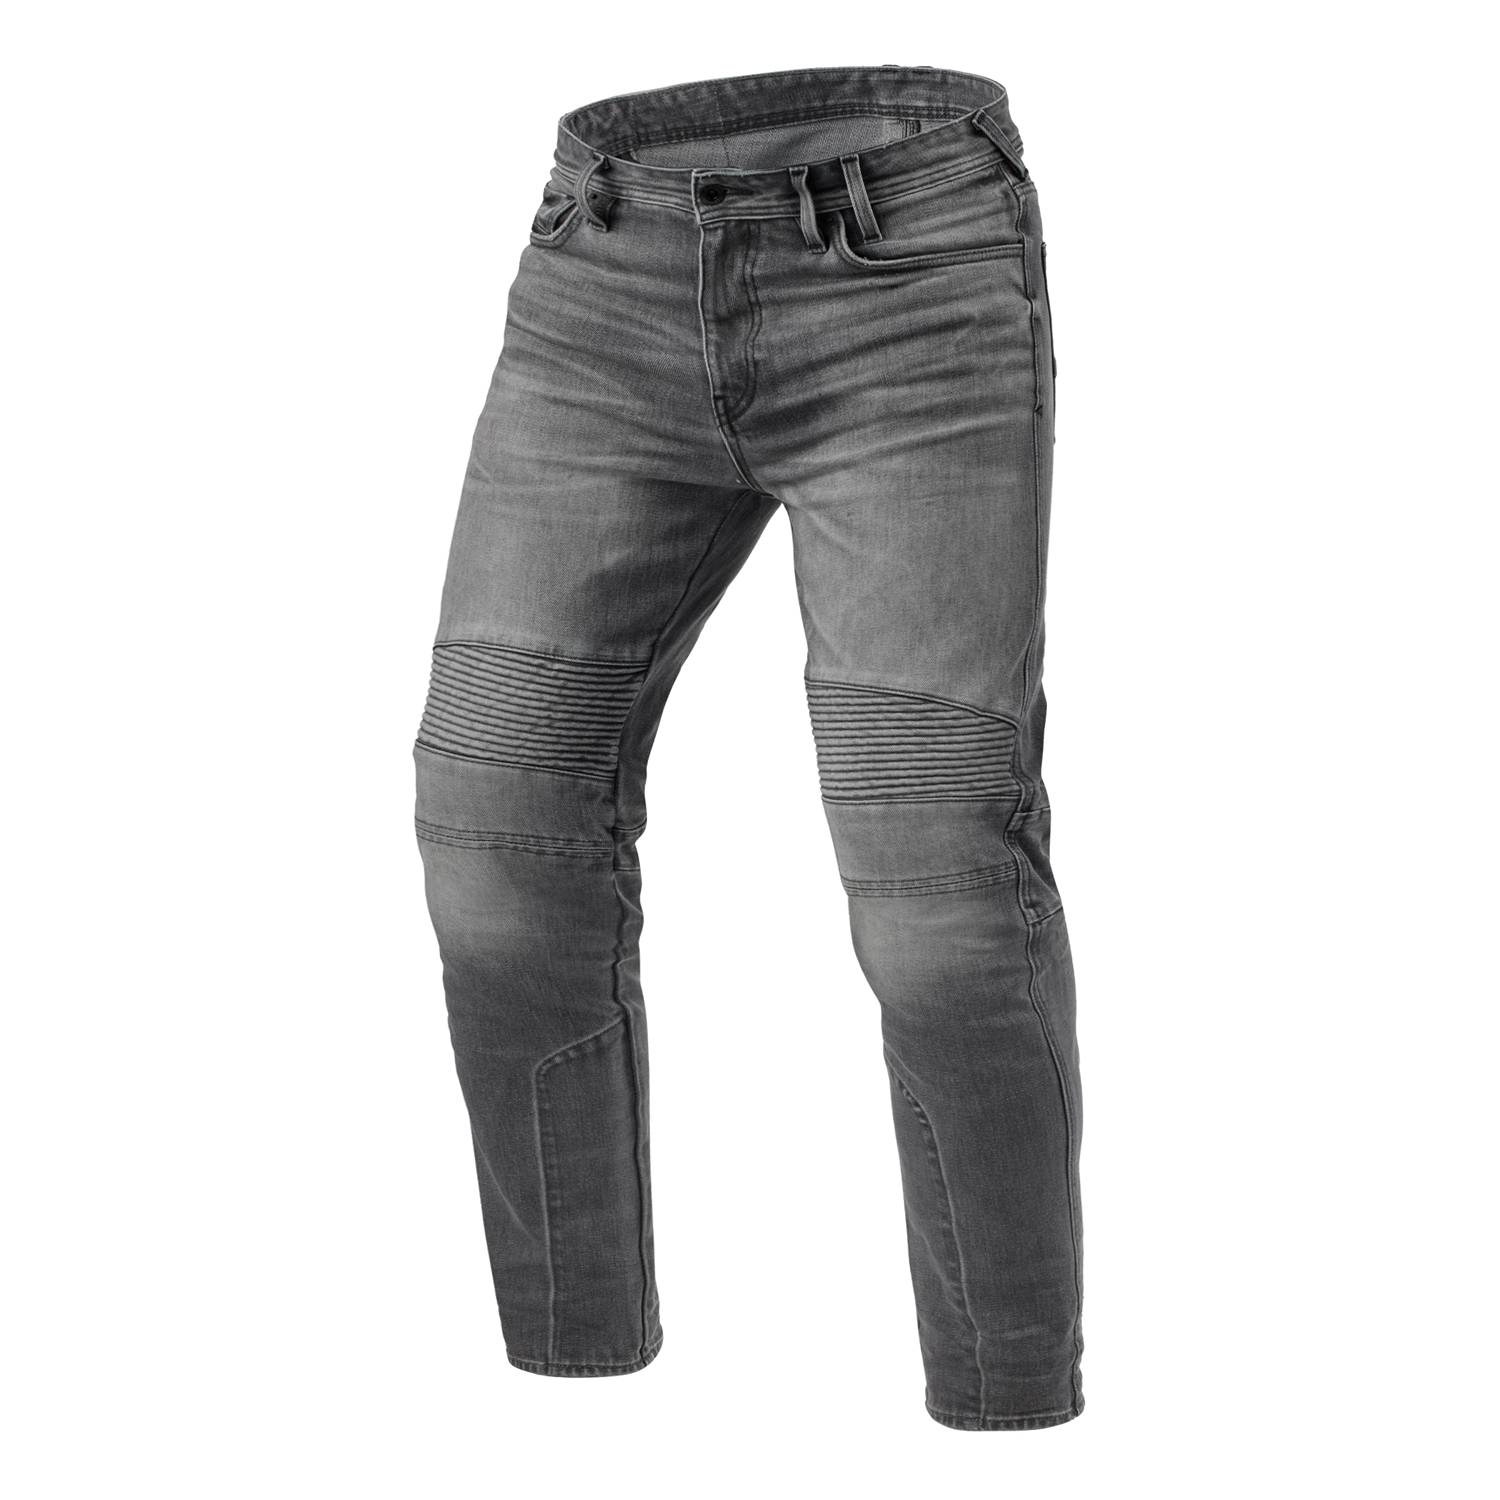 Image of REV'IT! Jeans Moto 2 TF Medium Grey Used L32 Size L32/W28 ID 8700001375573